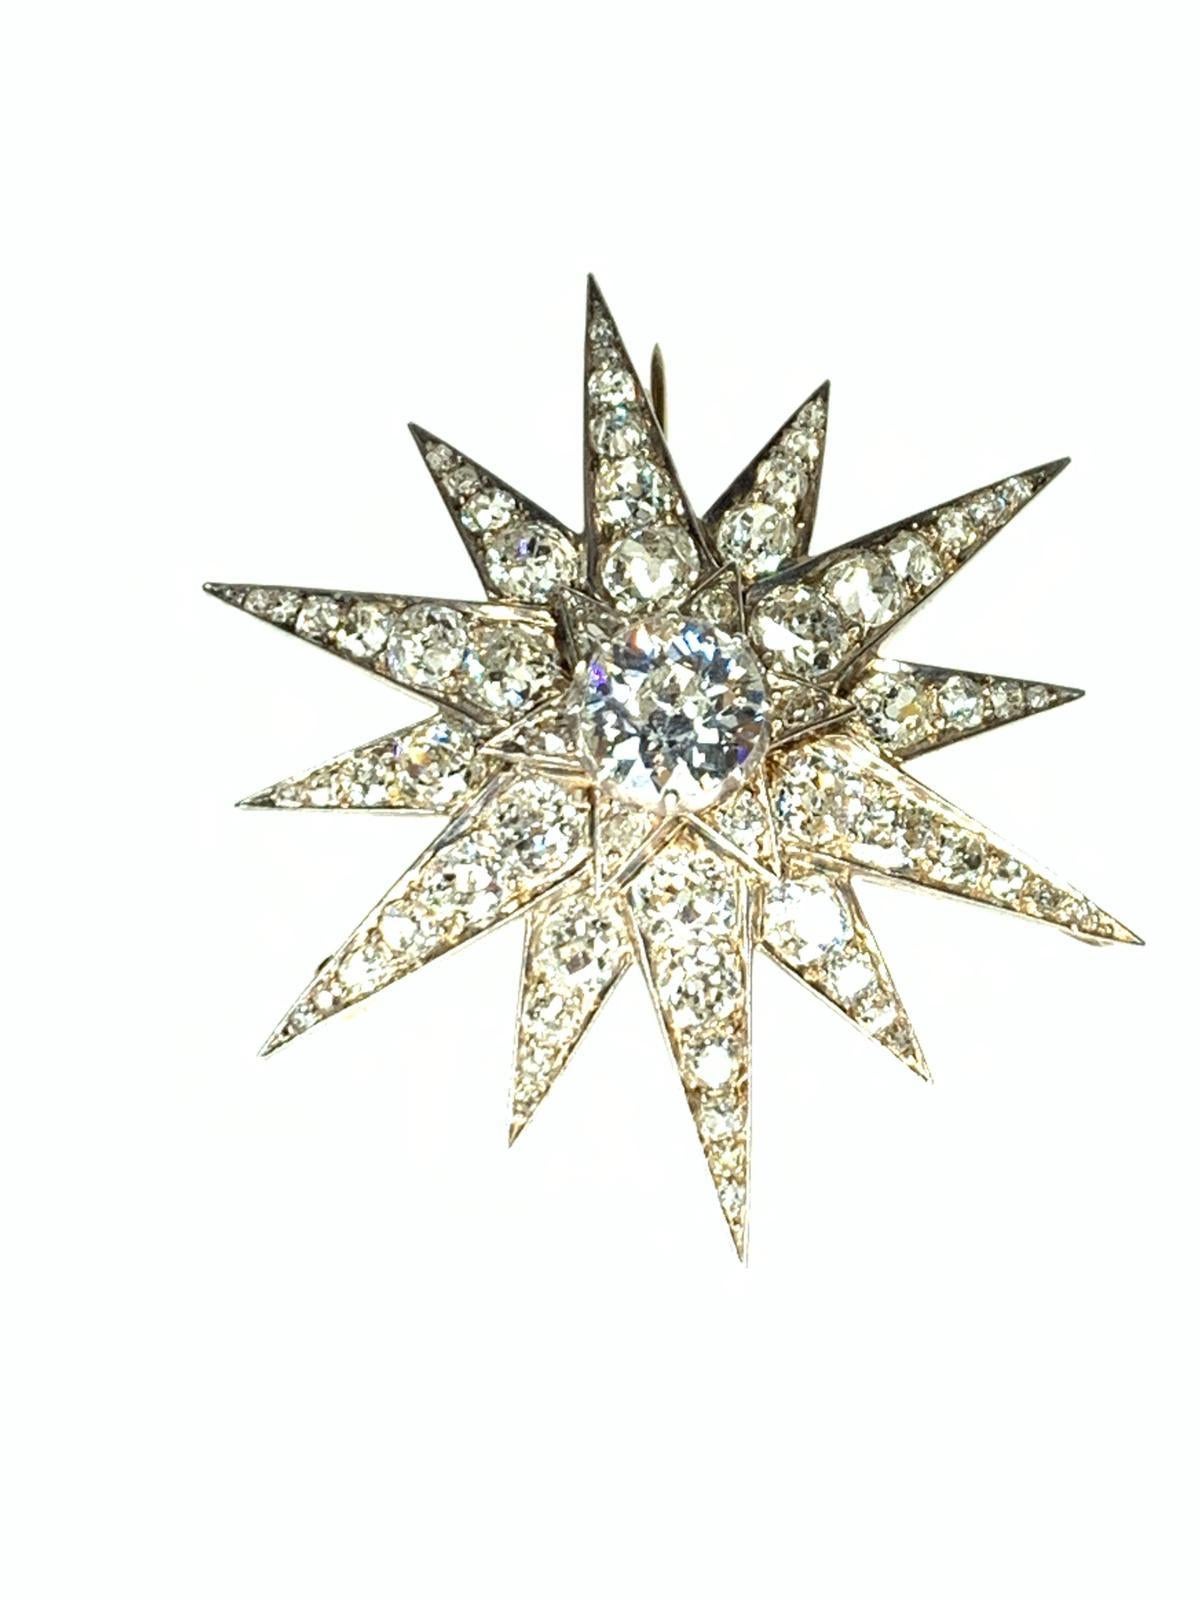 Eine viktorianische Gold, Silber & Diamant Star Brosche/Anhänger. Breite 5,3 cm. Gewicht 15,95gr. 
67 Diamanten. Mittlerer Diamant ca 2,8ct Rest der Diamanten 8,5ct KM/VS2 Silber & Gold 18k